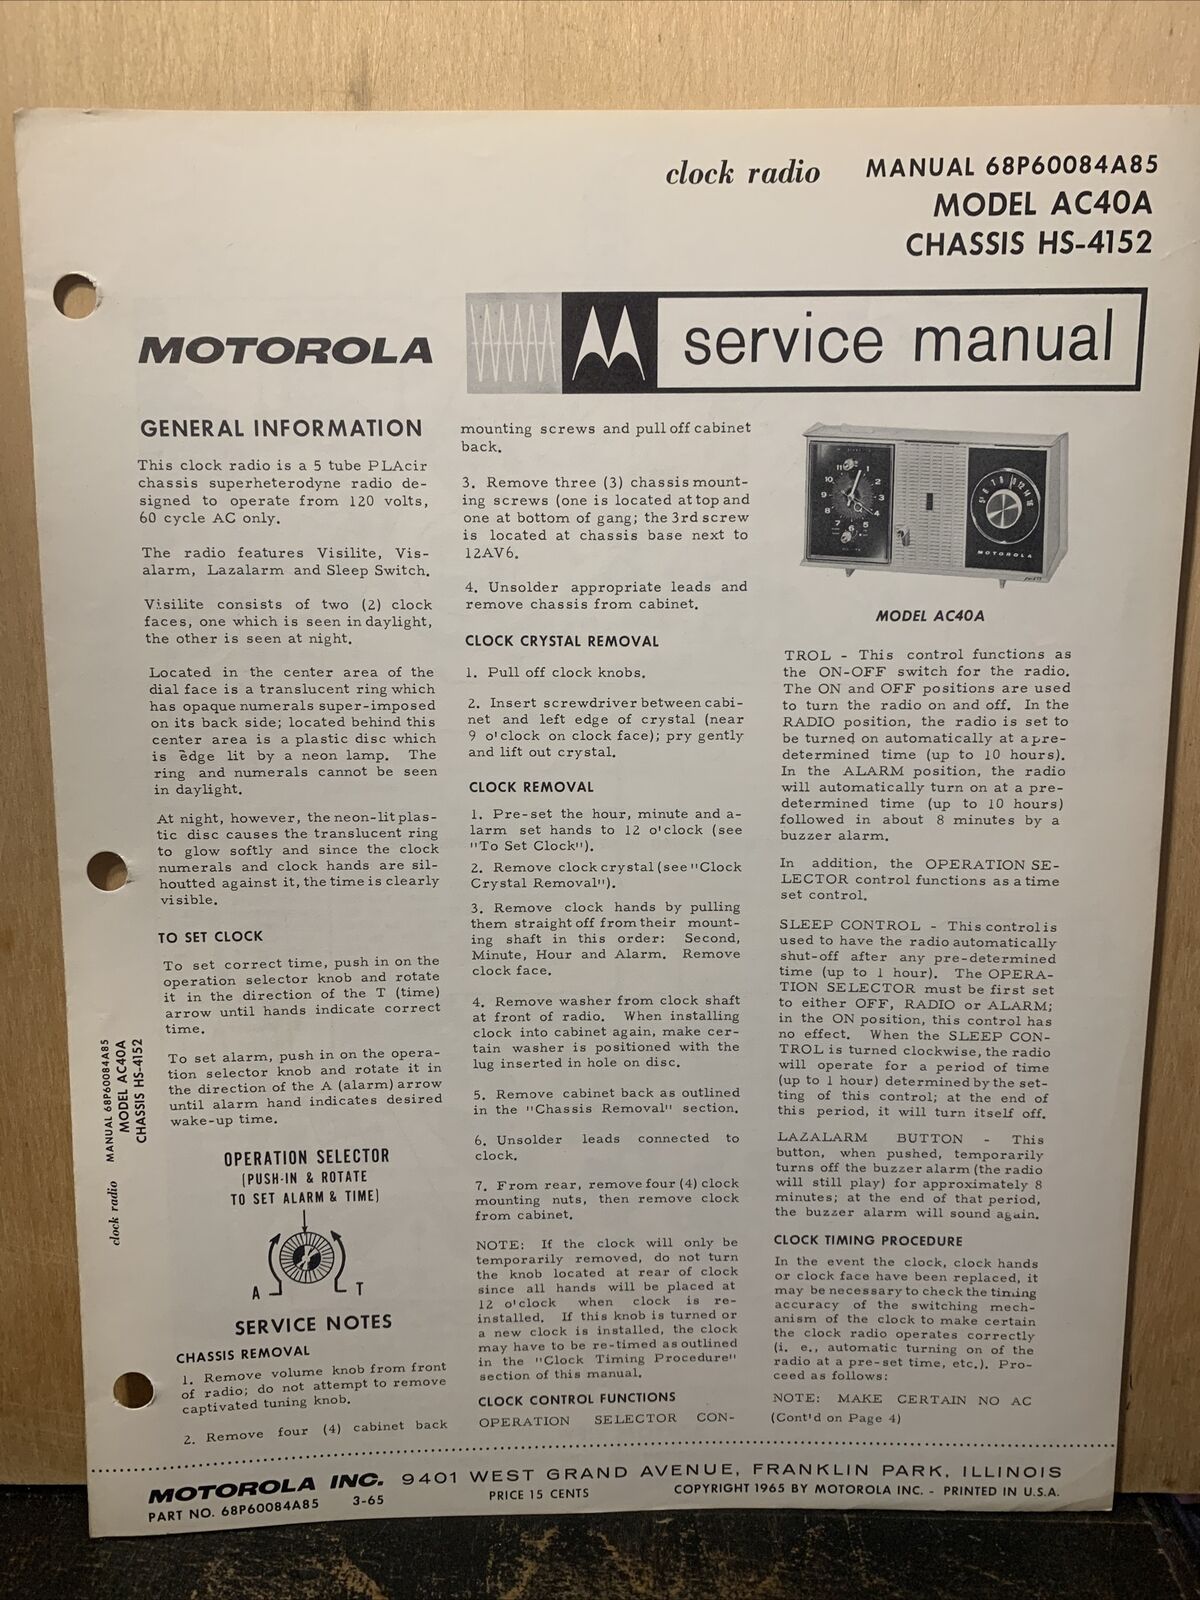 Motorola Service Manual For Model AC40A -schematics, Parts List.